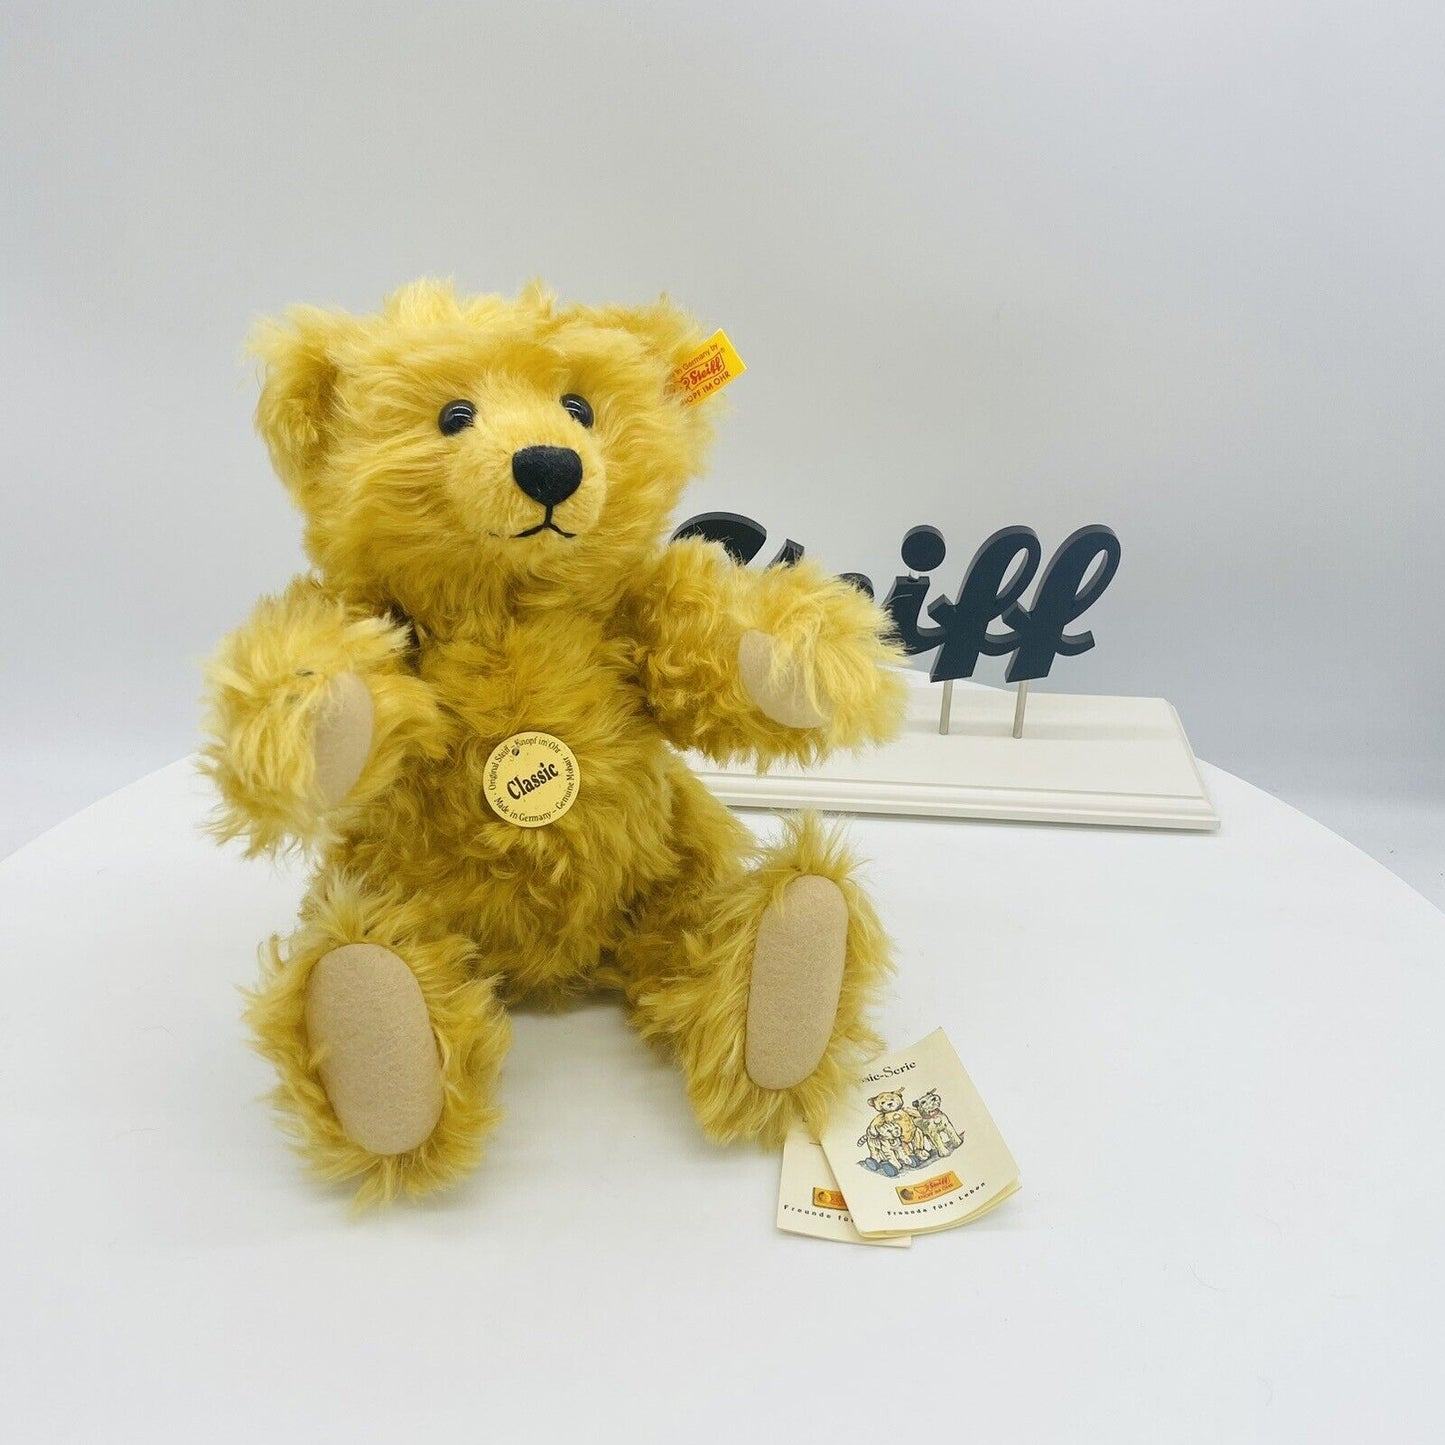 Steiff Classic Teddybär blond 001550 aus 2002 32cm Mohair